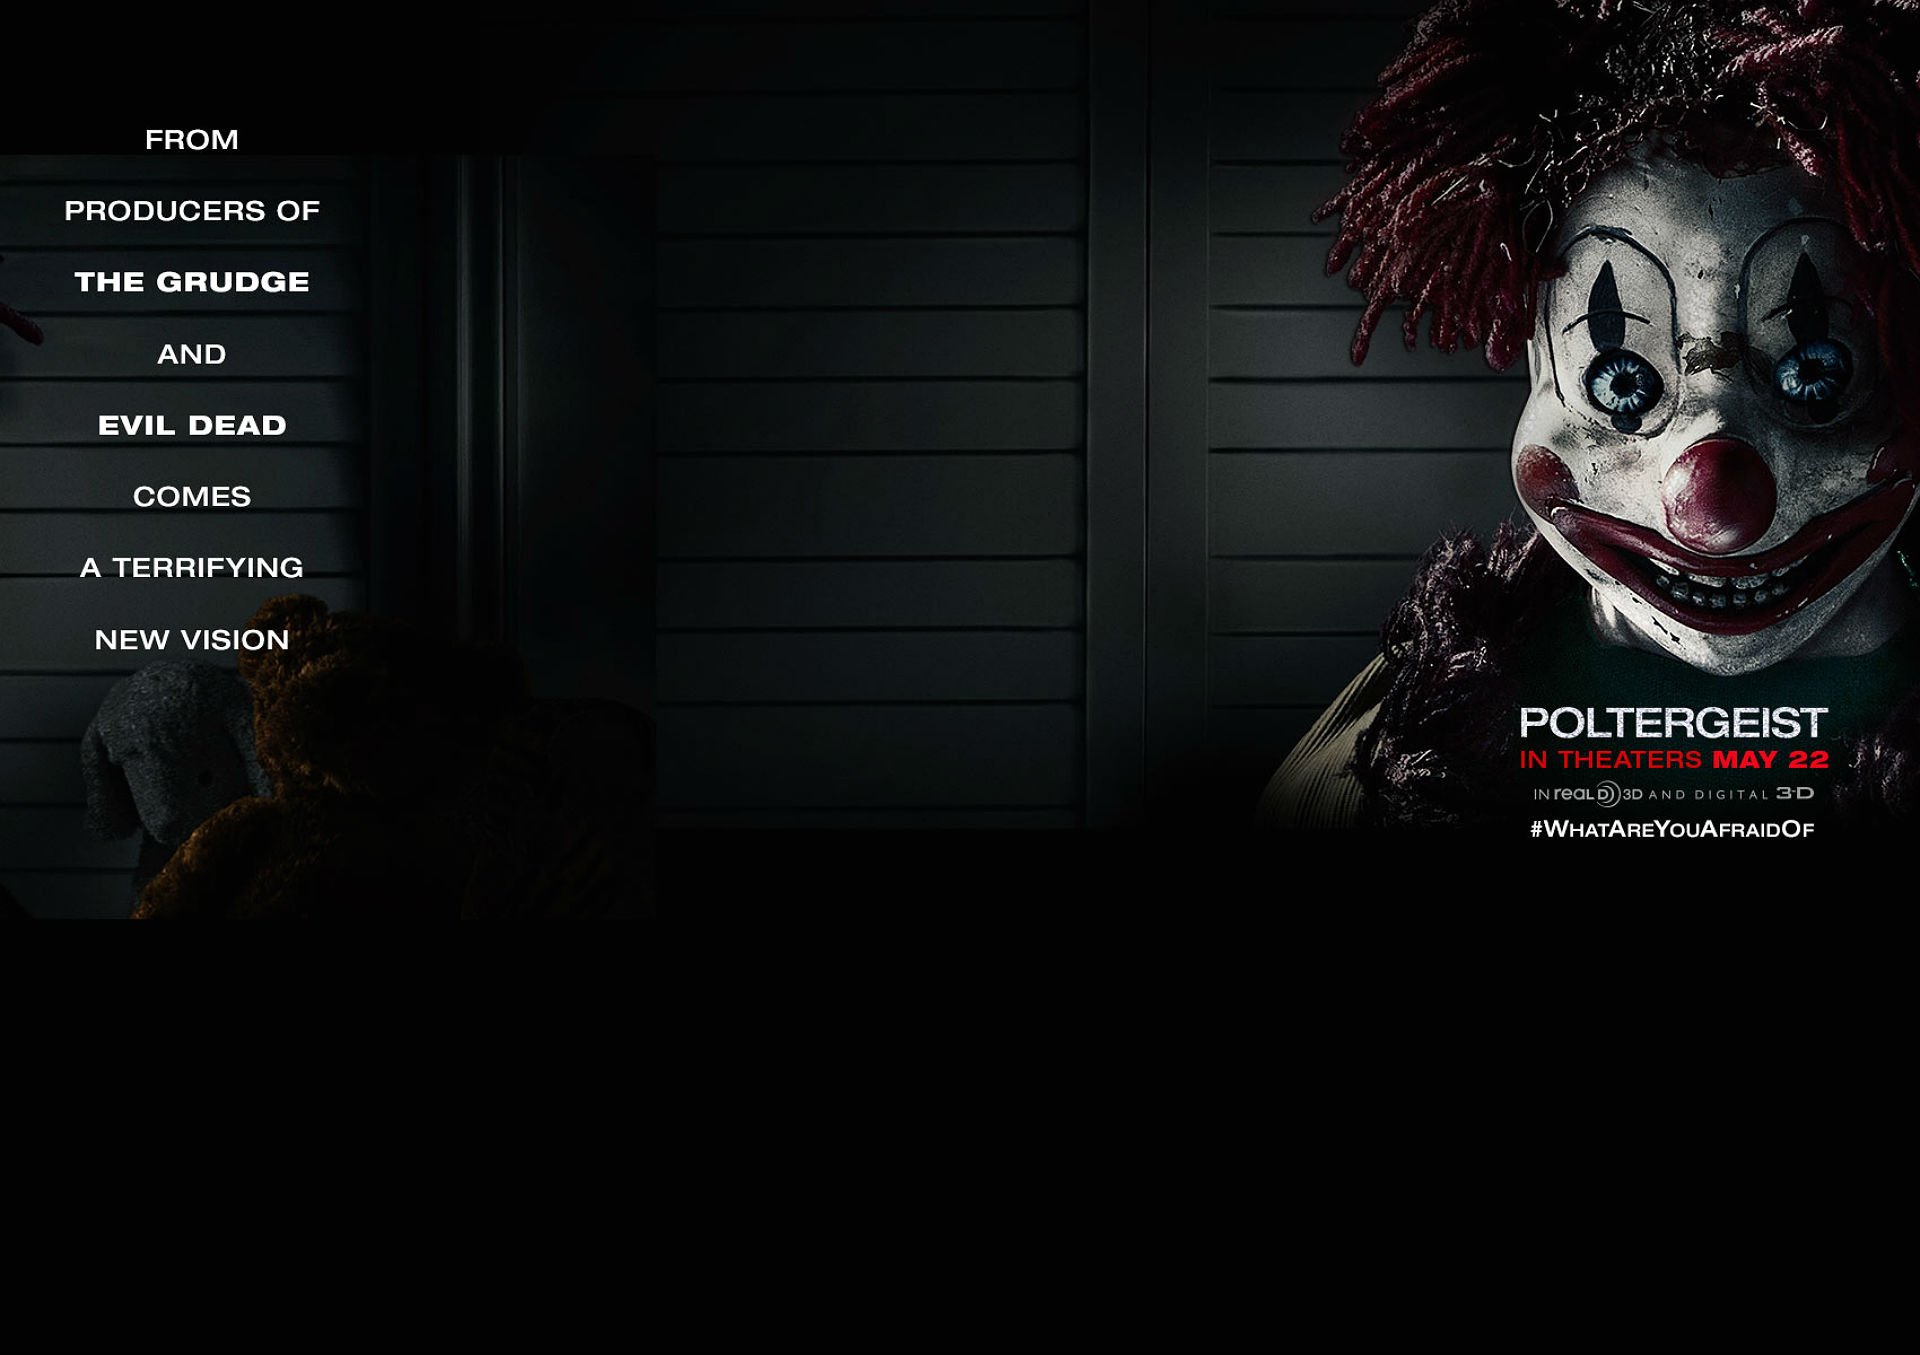 POLTERGEIST horror dark thriller scary creepy evil poster clown